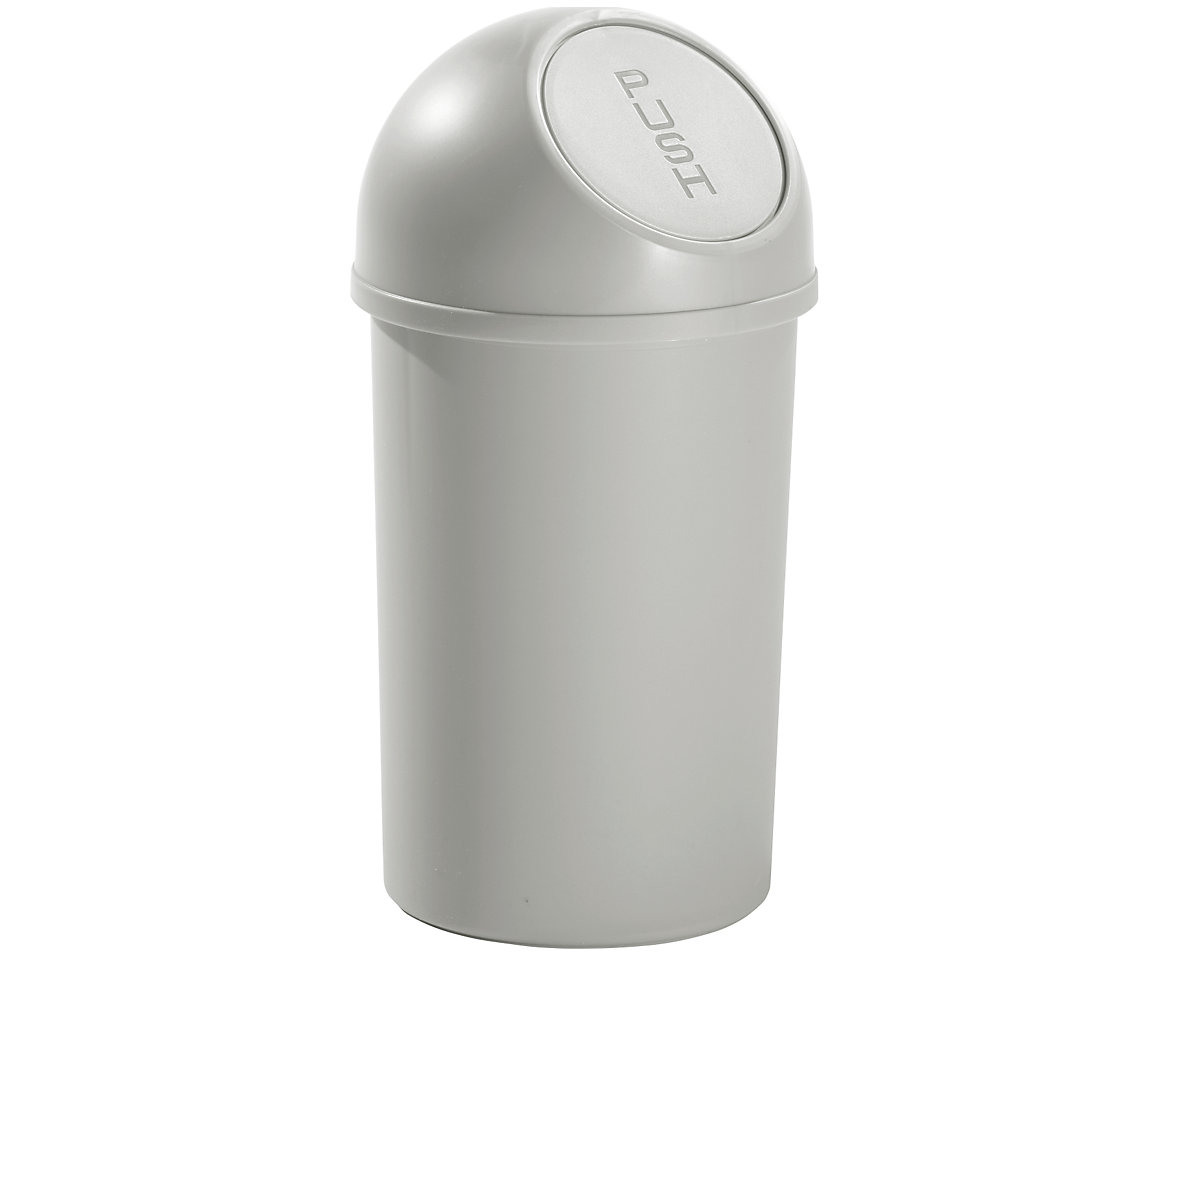 Push-Abfallbehälter aus Kunststoff helit, Volumen 13 l, VE 6, HxØ 490 x 252 mm, lichtgrau-4